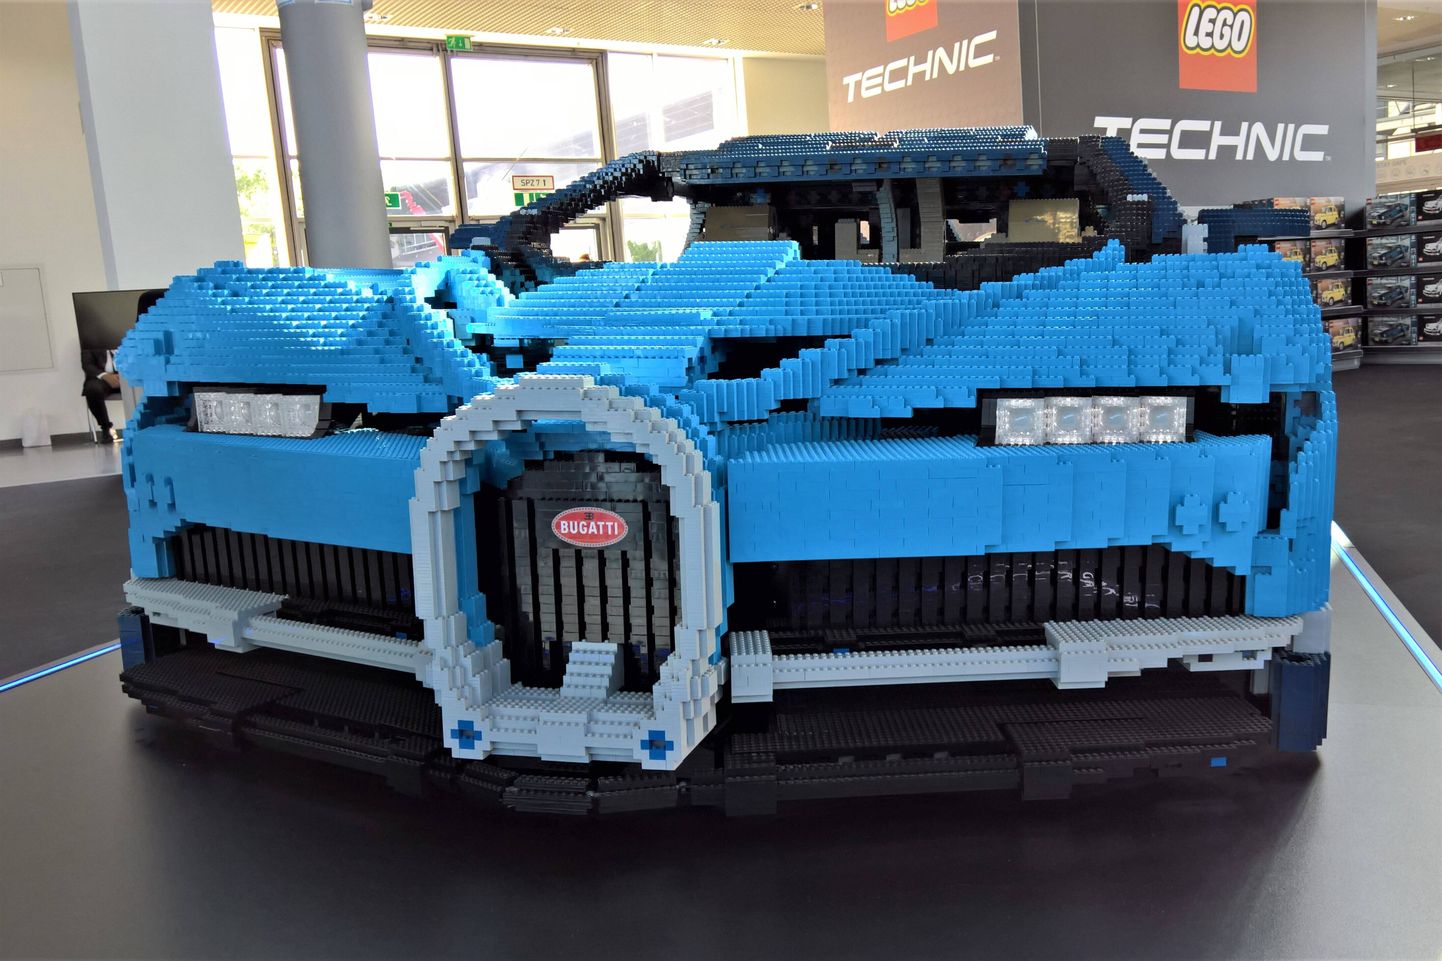 Legost Bugatti.